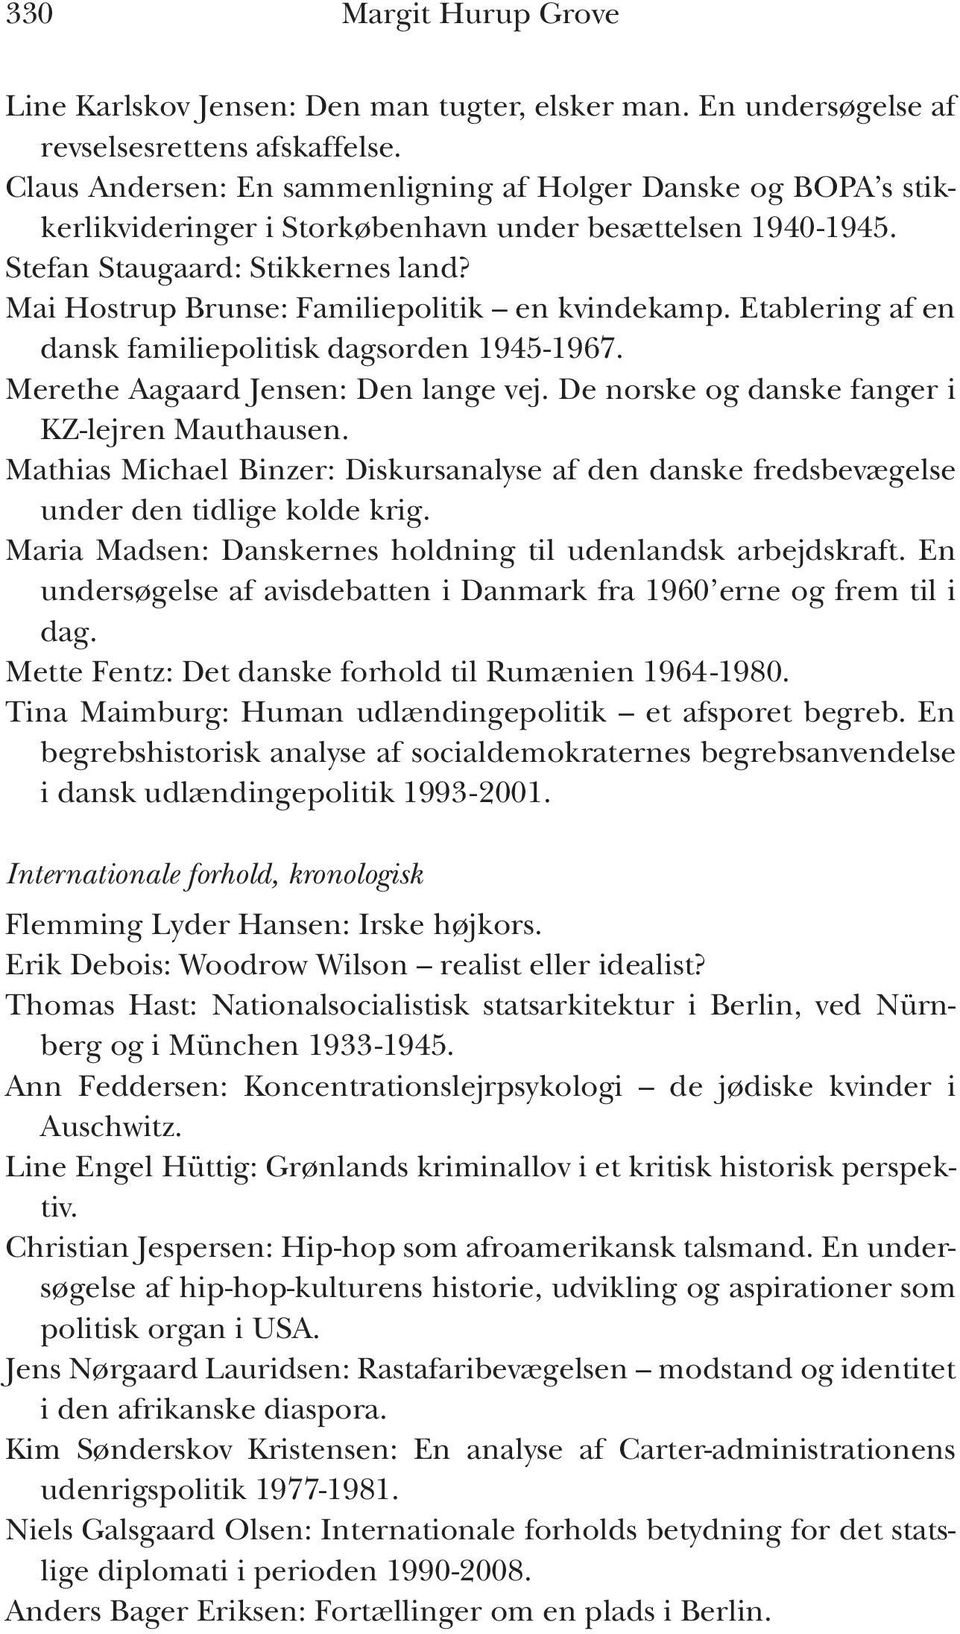 Mai Hostrup Brunse: Familiepolitik en kvindekamp. Etablering af en dansk familiepolitisk dagsorden 1945-1967. Merethe Aagaard Jensen: Den lange vej. De norske og danske fanger i KZ-lejren Mauthausen.